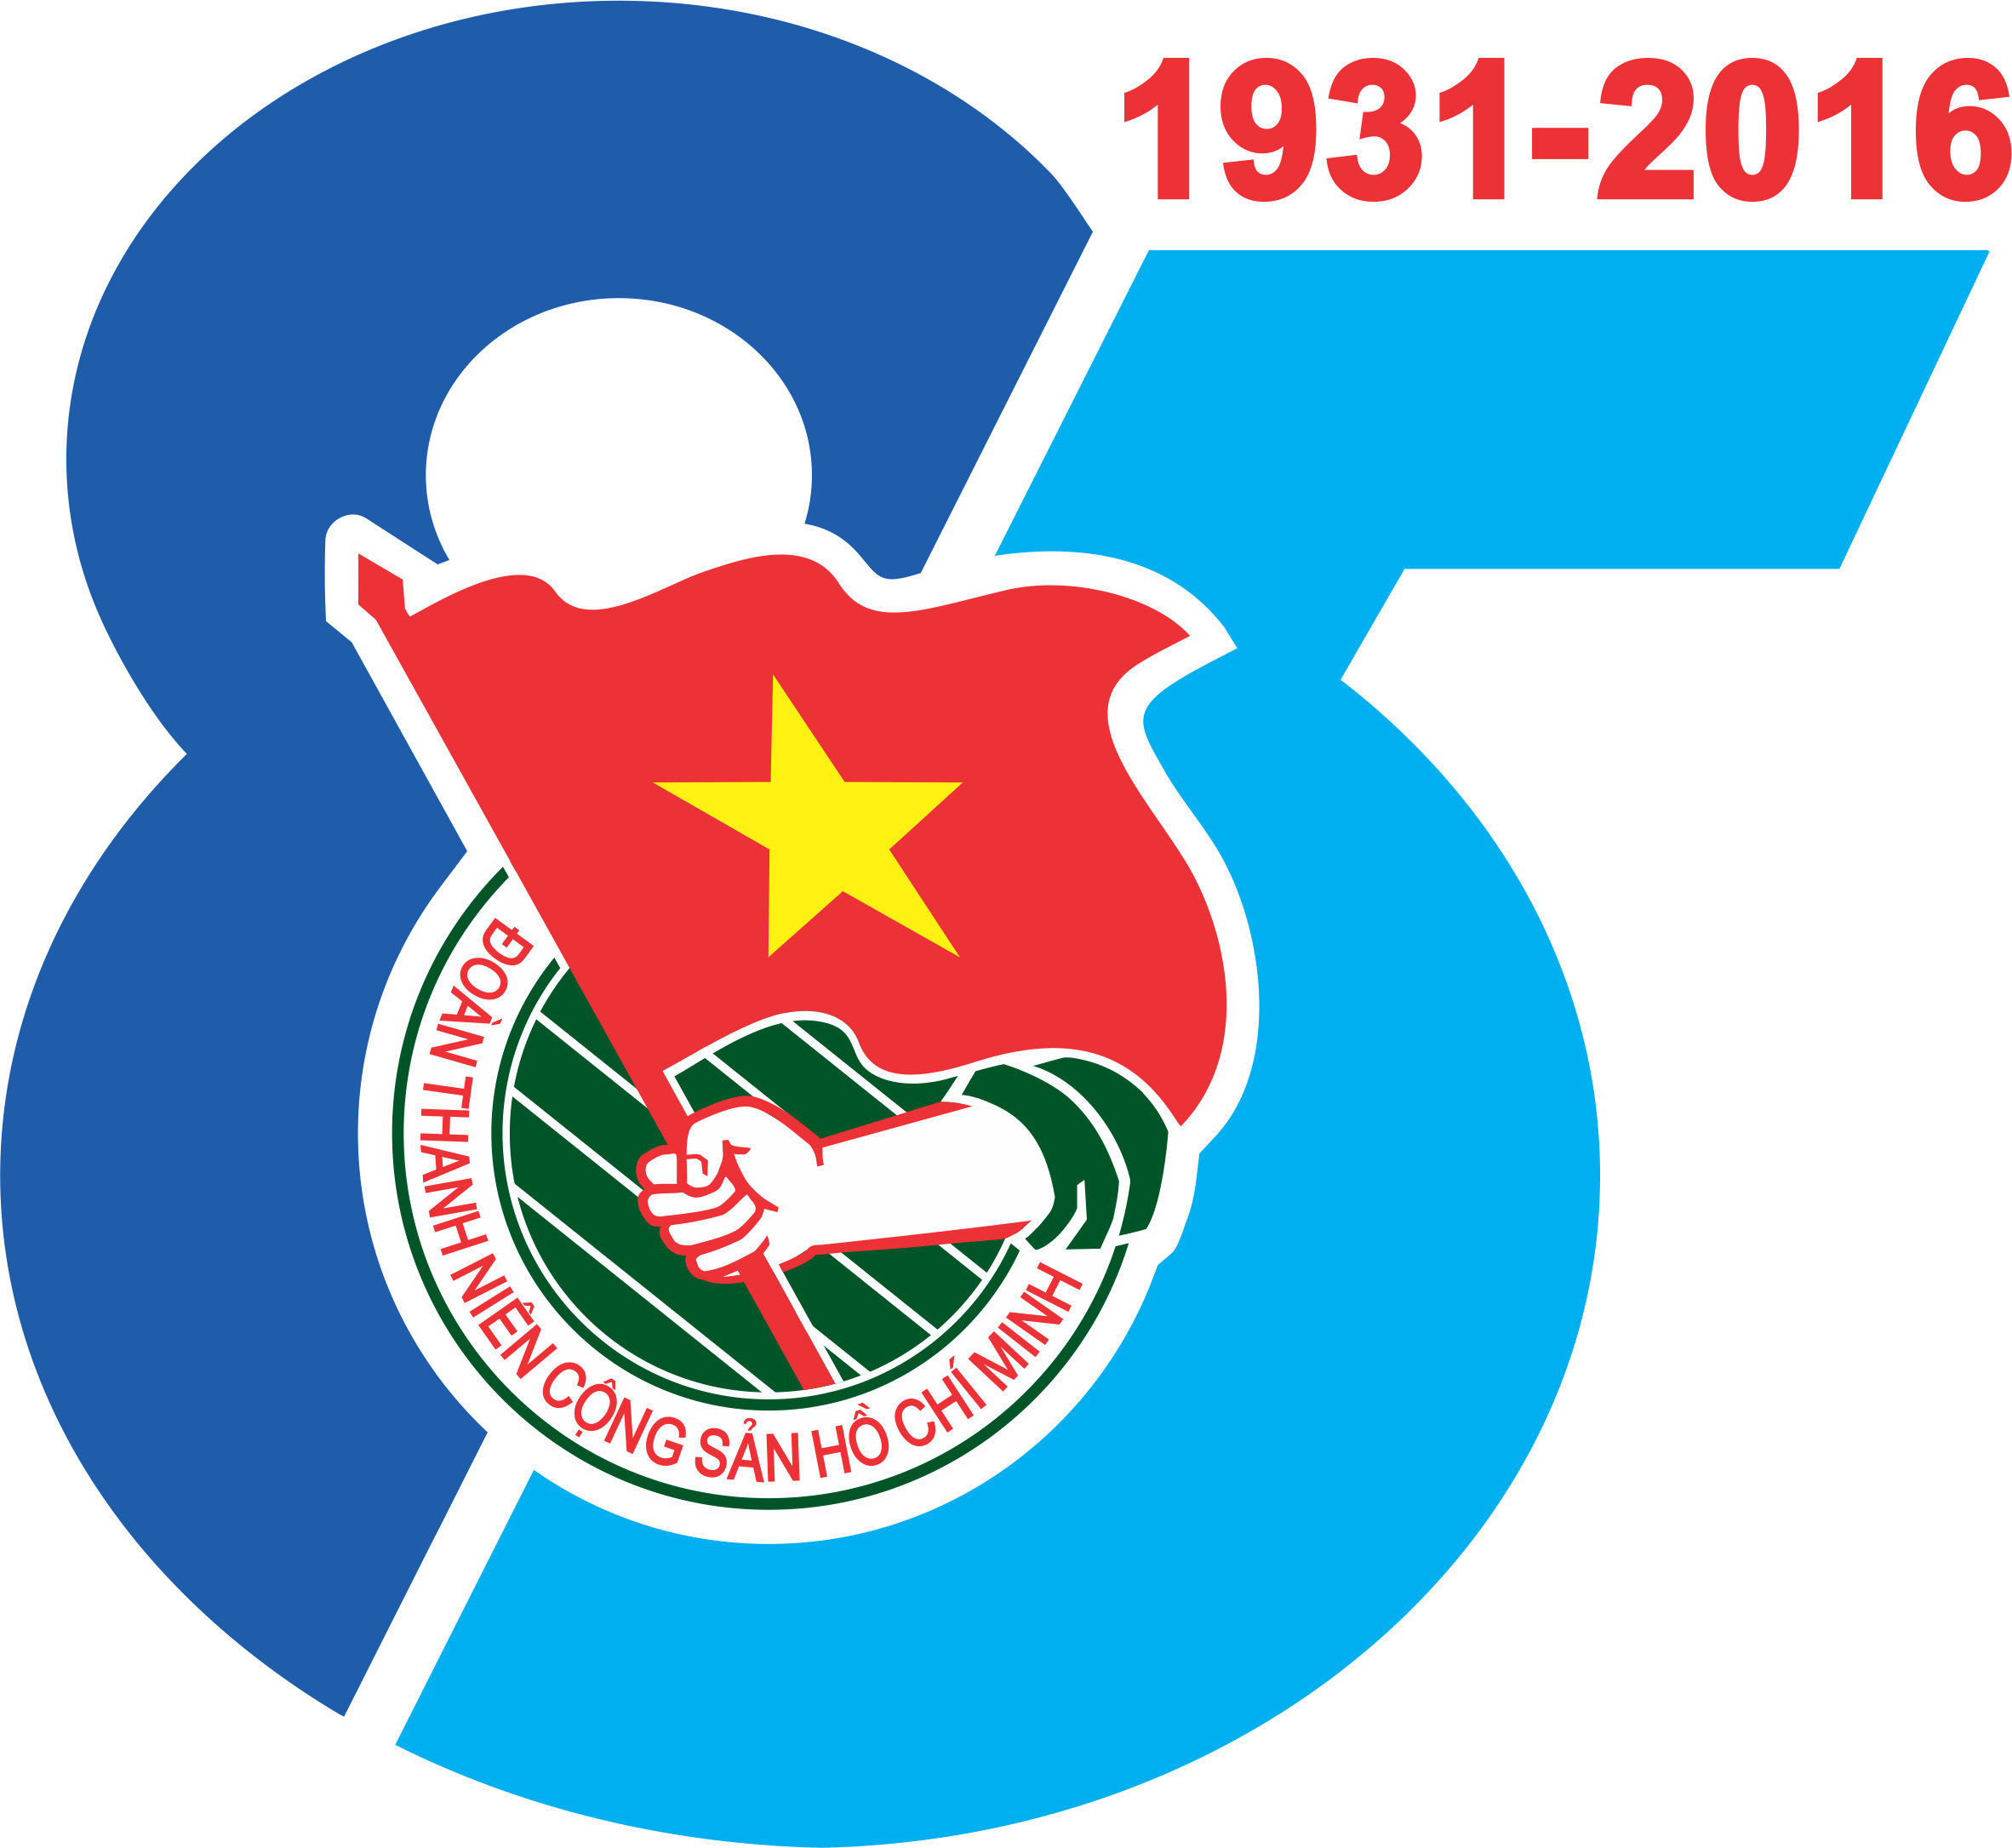 Biểu trưng Đoàn Thanh niên Cộng sản Hồ Chí Minh: Biểu trưng Đoàn Thanh niên Cộng sản Hồ Chí Minh là biểu tượng của đội ngũ thanh niên yêu nước và năng động, đang tham gia tích cực trong các hoạt động xã hội. Năm 2024, biểu trưng Đoàn được chuẩn bị sẵn sàng cho các sự kiện quan trọng, giúp cho Đoàn thanh niên thu hút được nhiều sự quan tâm và ủng hộ từ cộng đồng.